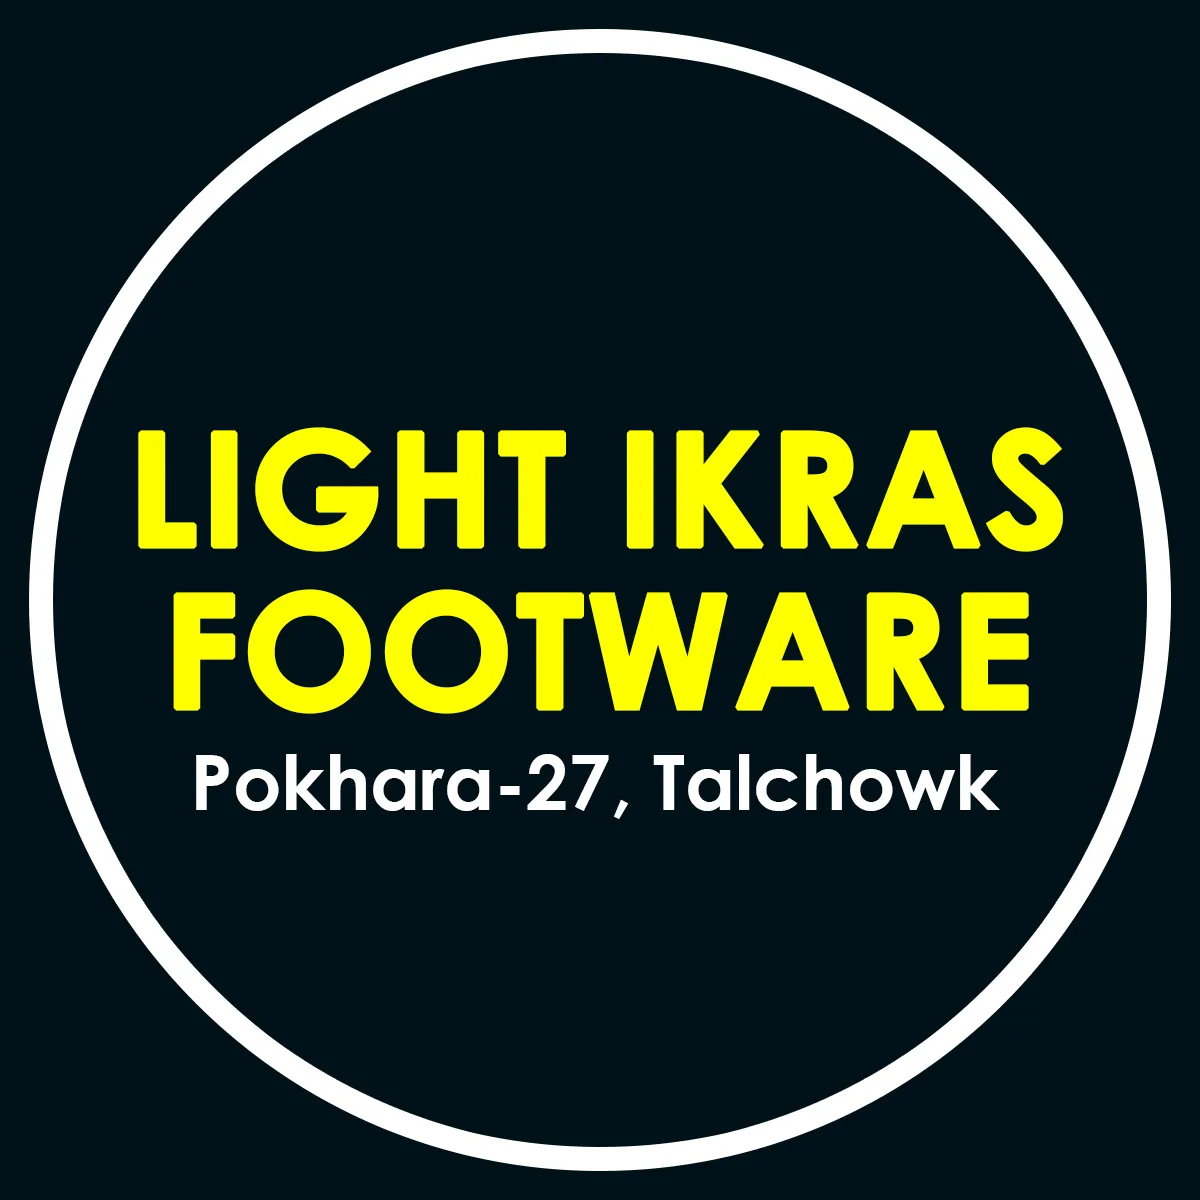 Light Ikras Footware